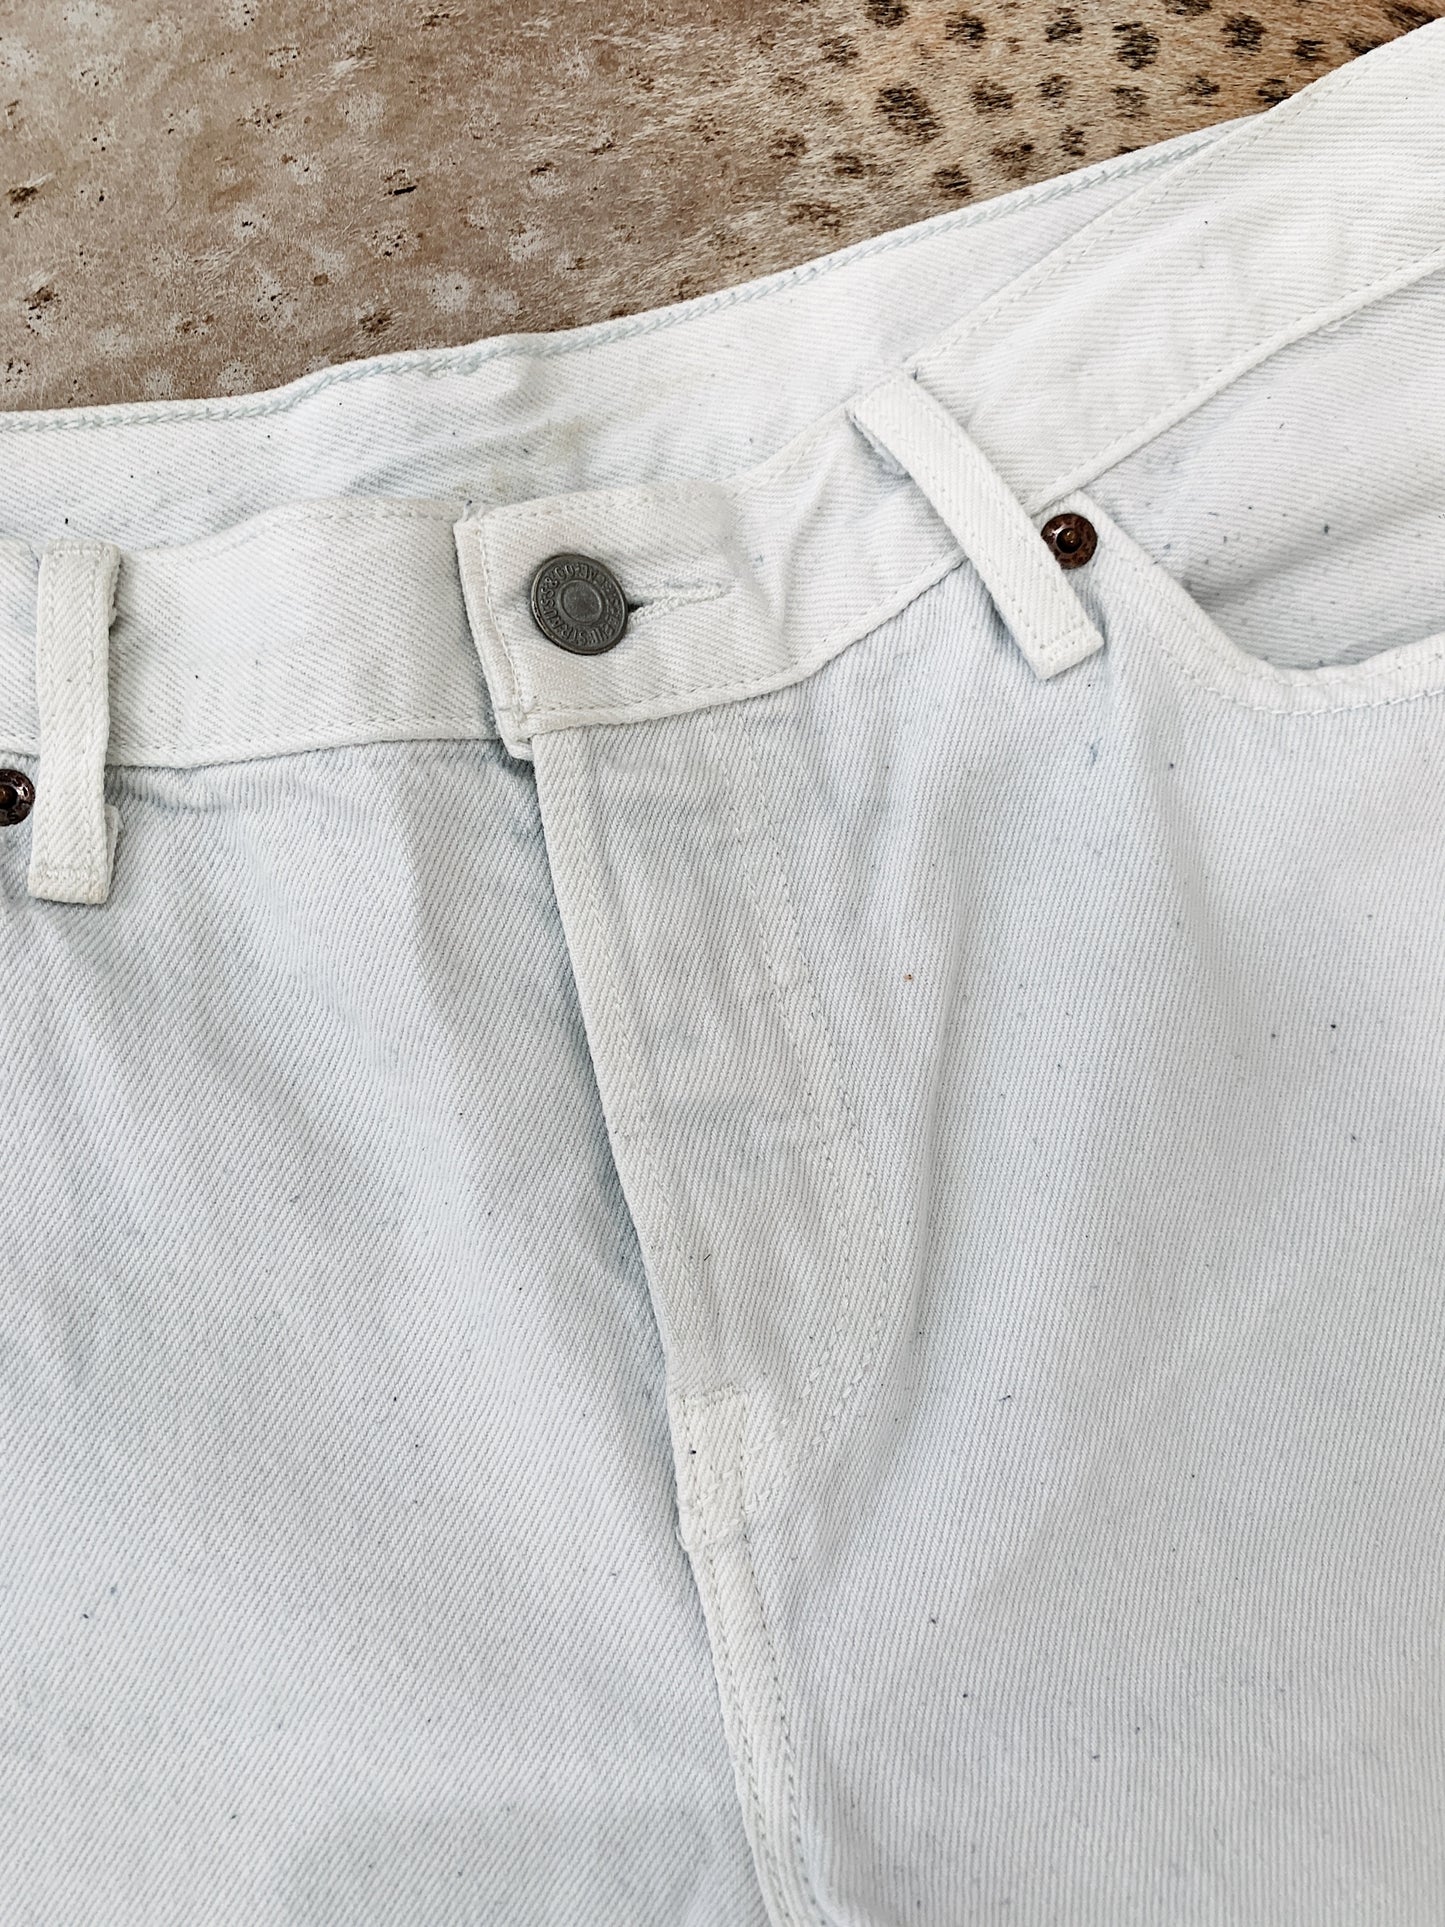 Vintage Levi's High W Re-cut Denim Shorts / Size 33